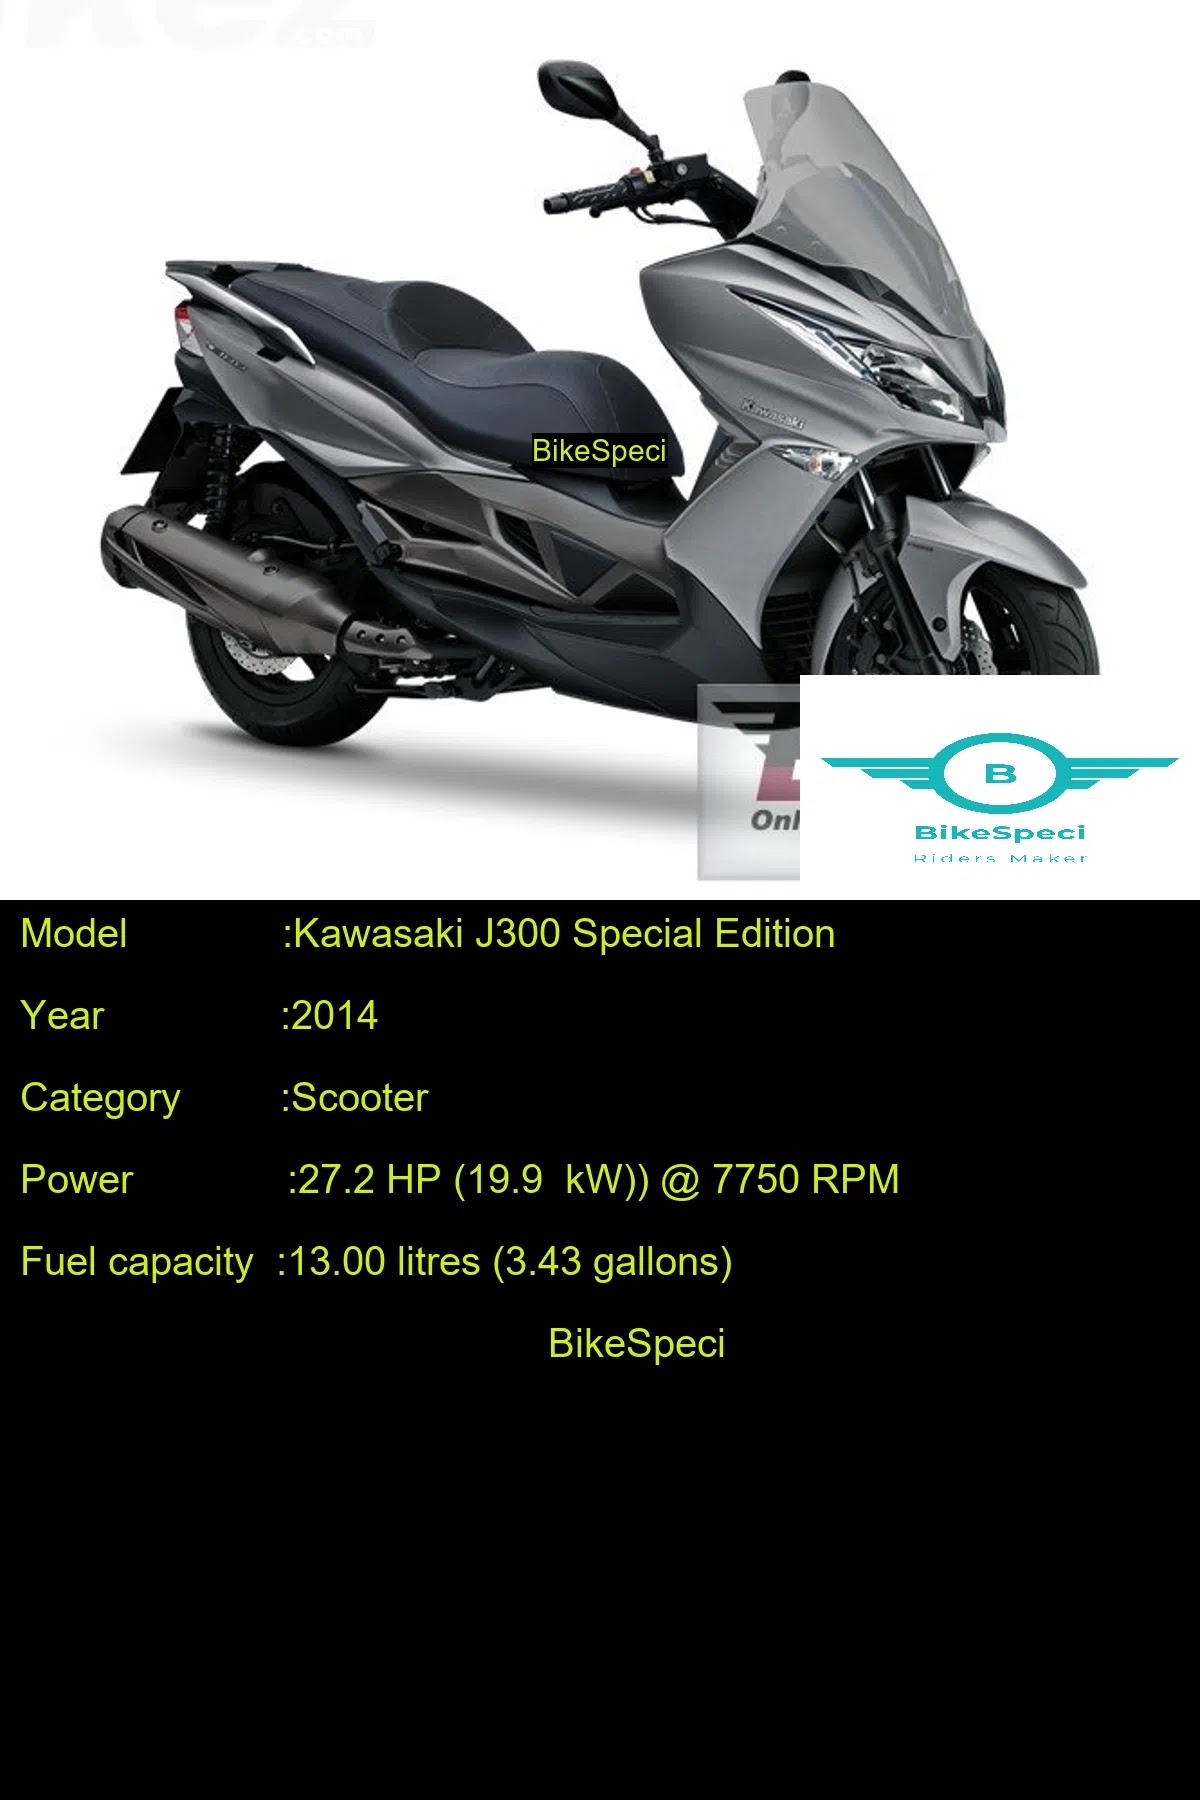 Kawasaki J300 Special Edition | Price, Photos, Millage, Speed, Colours etc